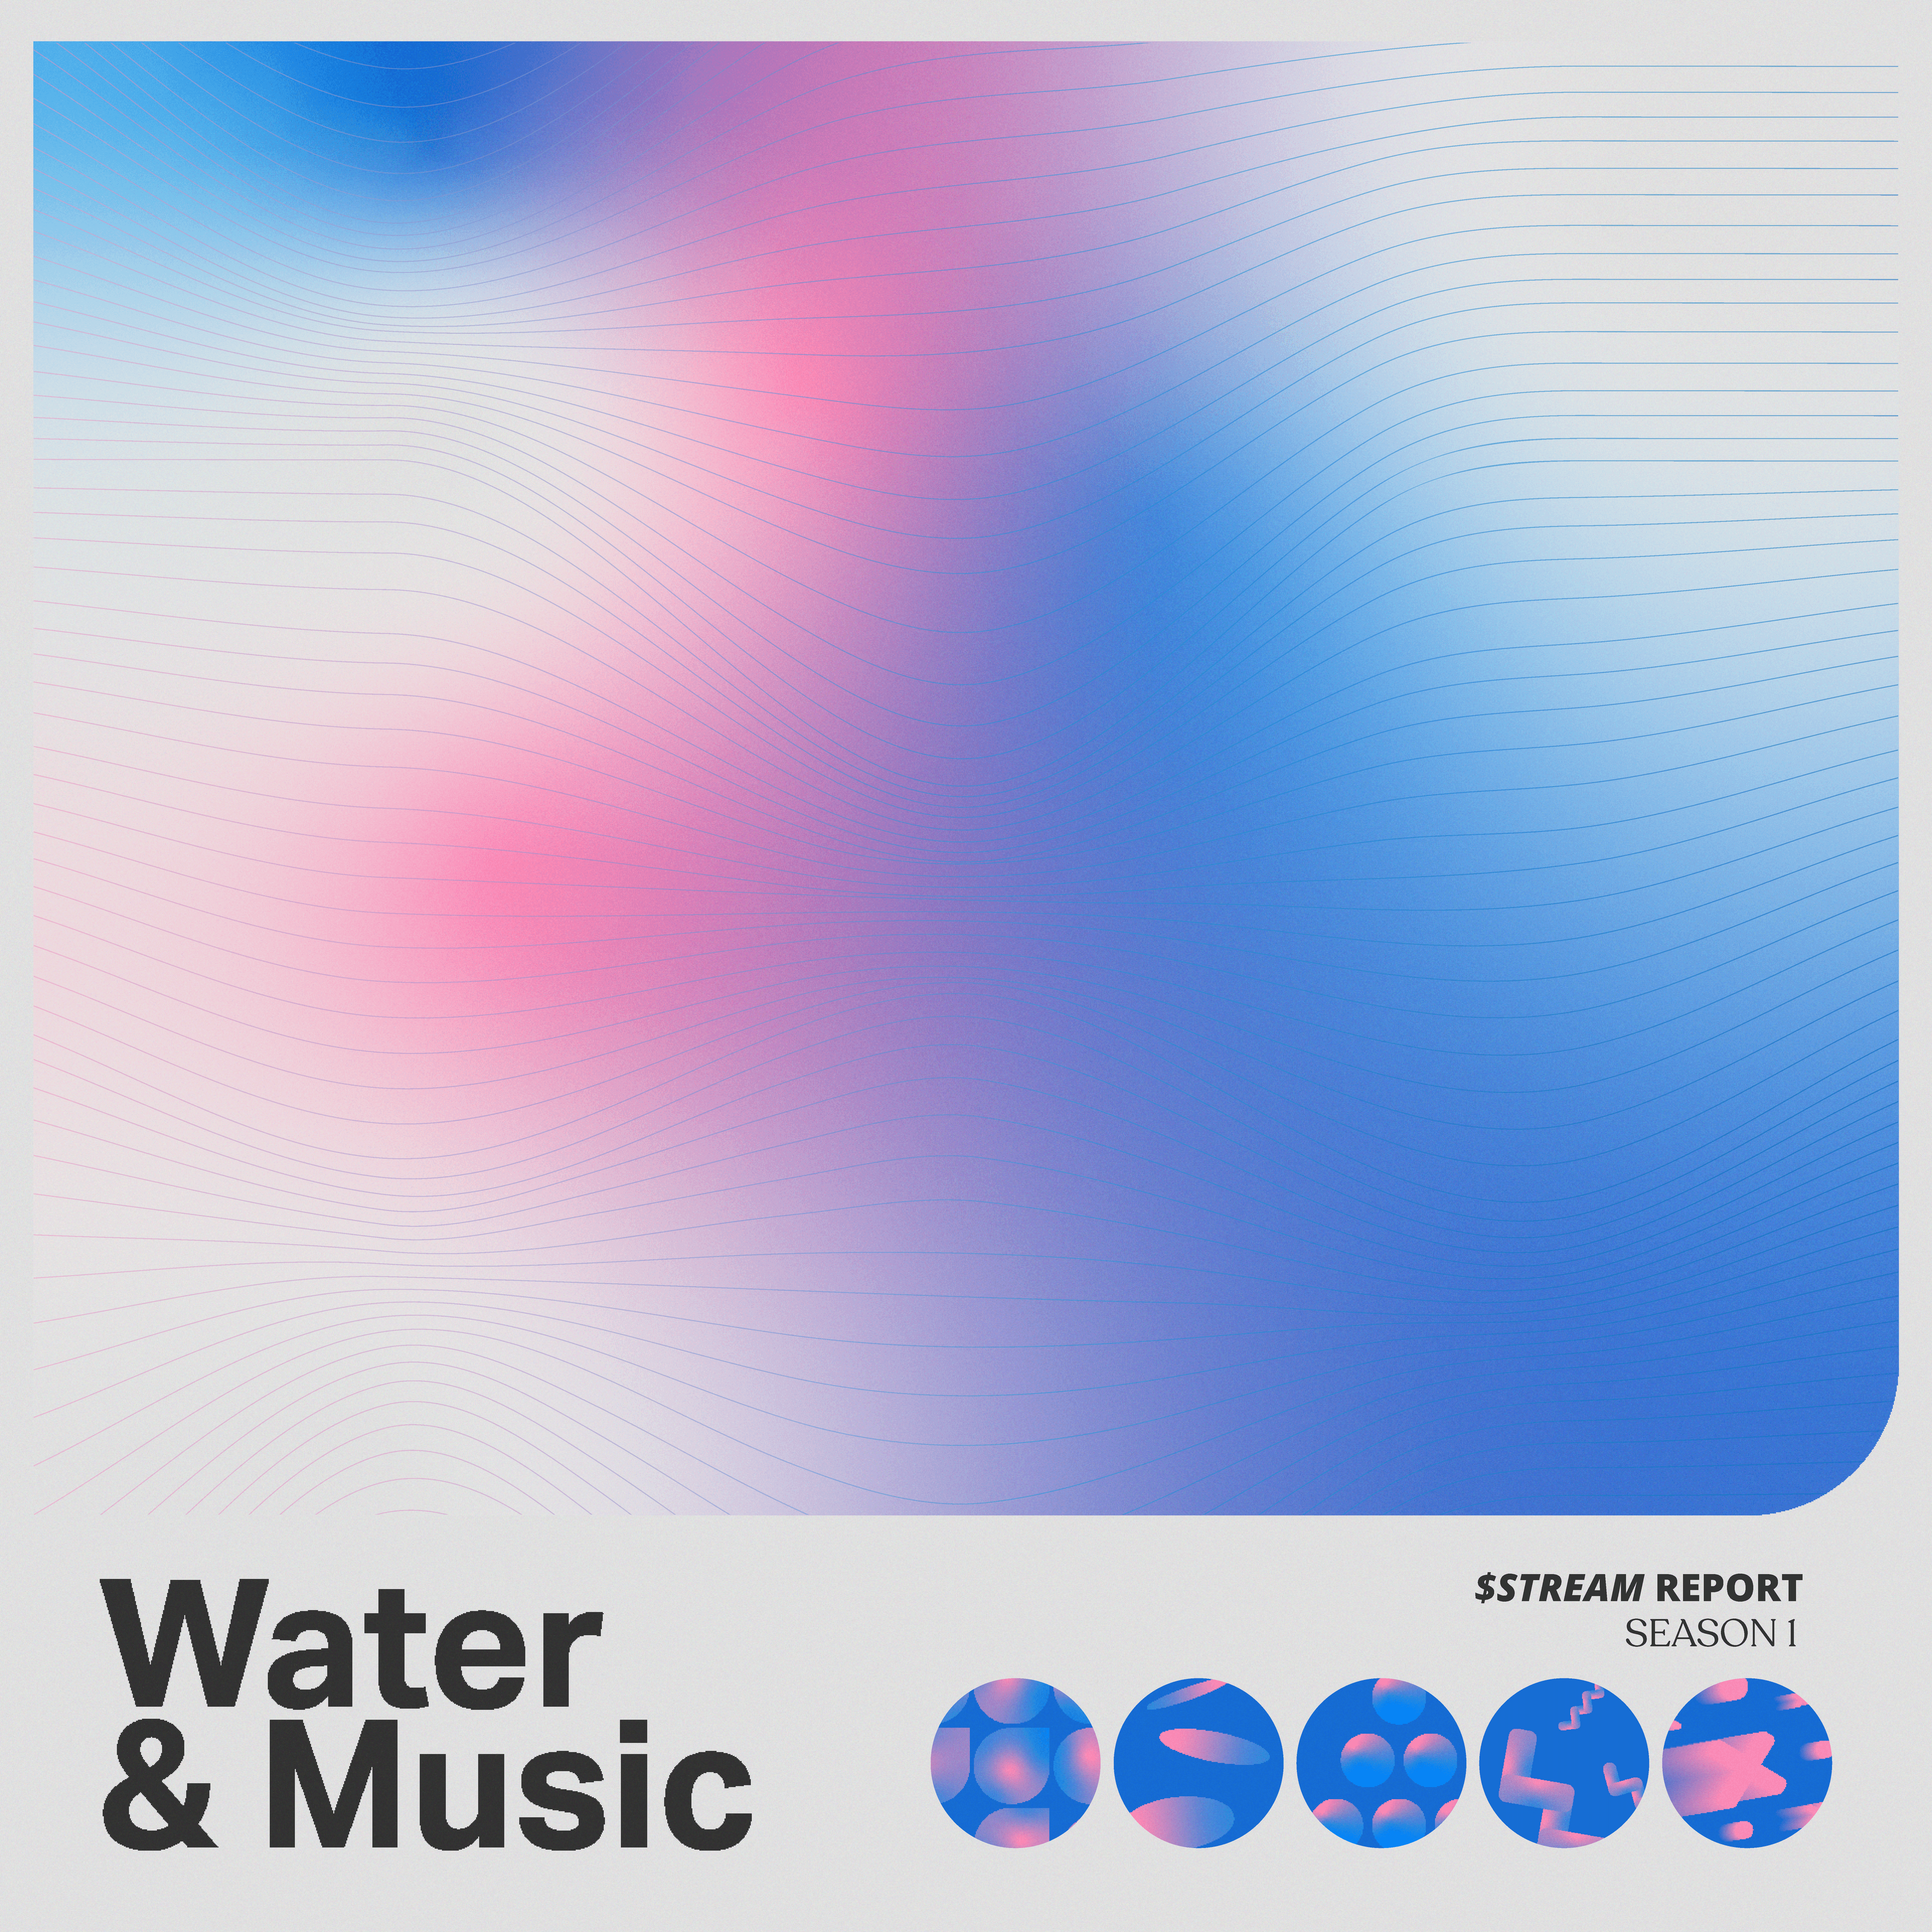 Water & Music $STREAM S1 11/100